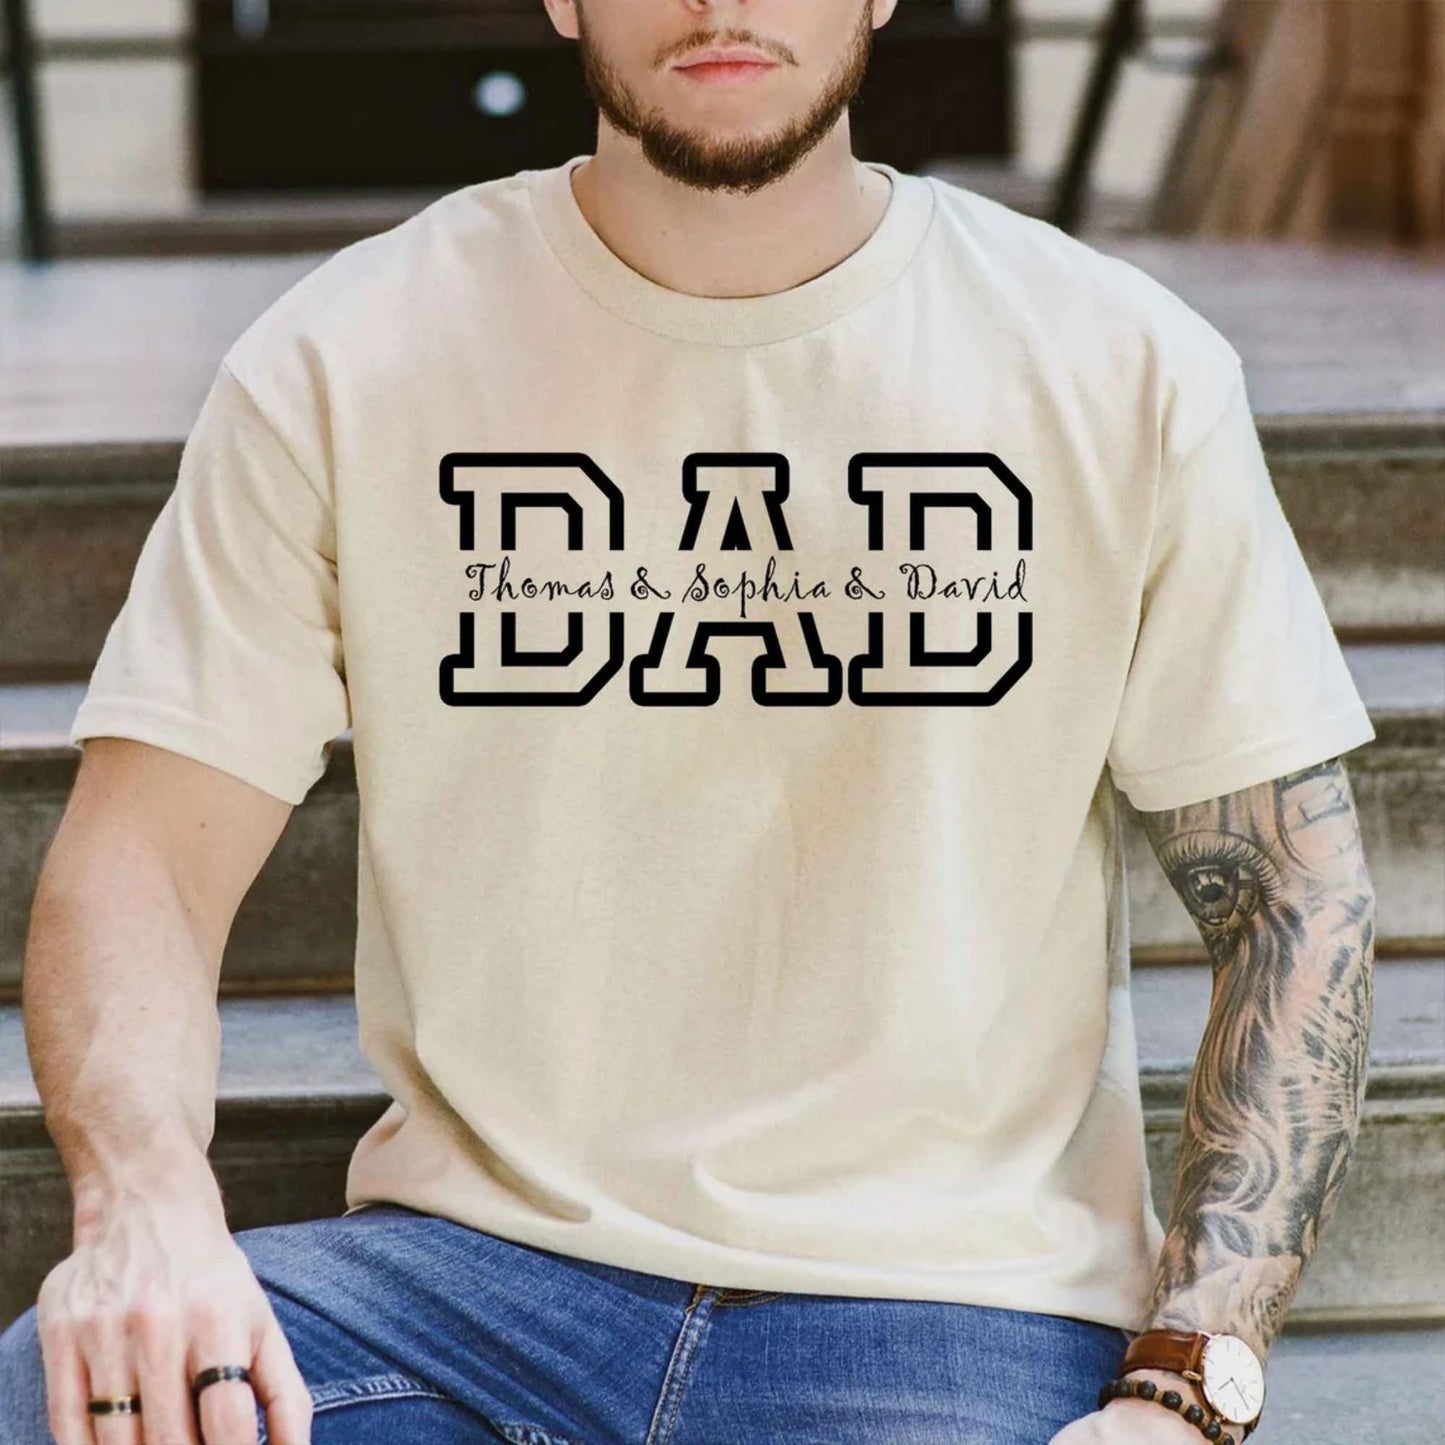 Personalisiertes Papa Shirt mit Kindernamen, Geschenk für Papa